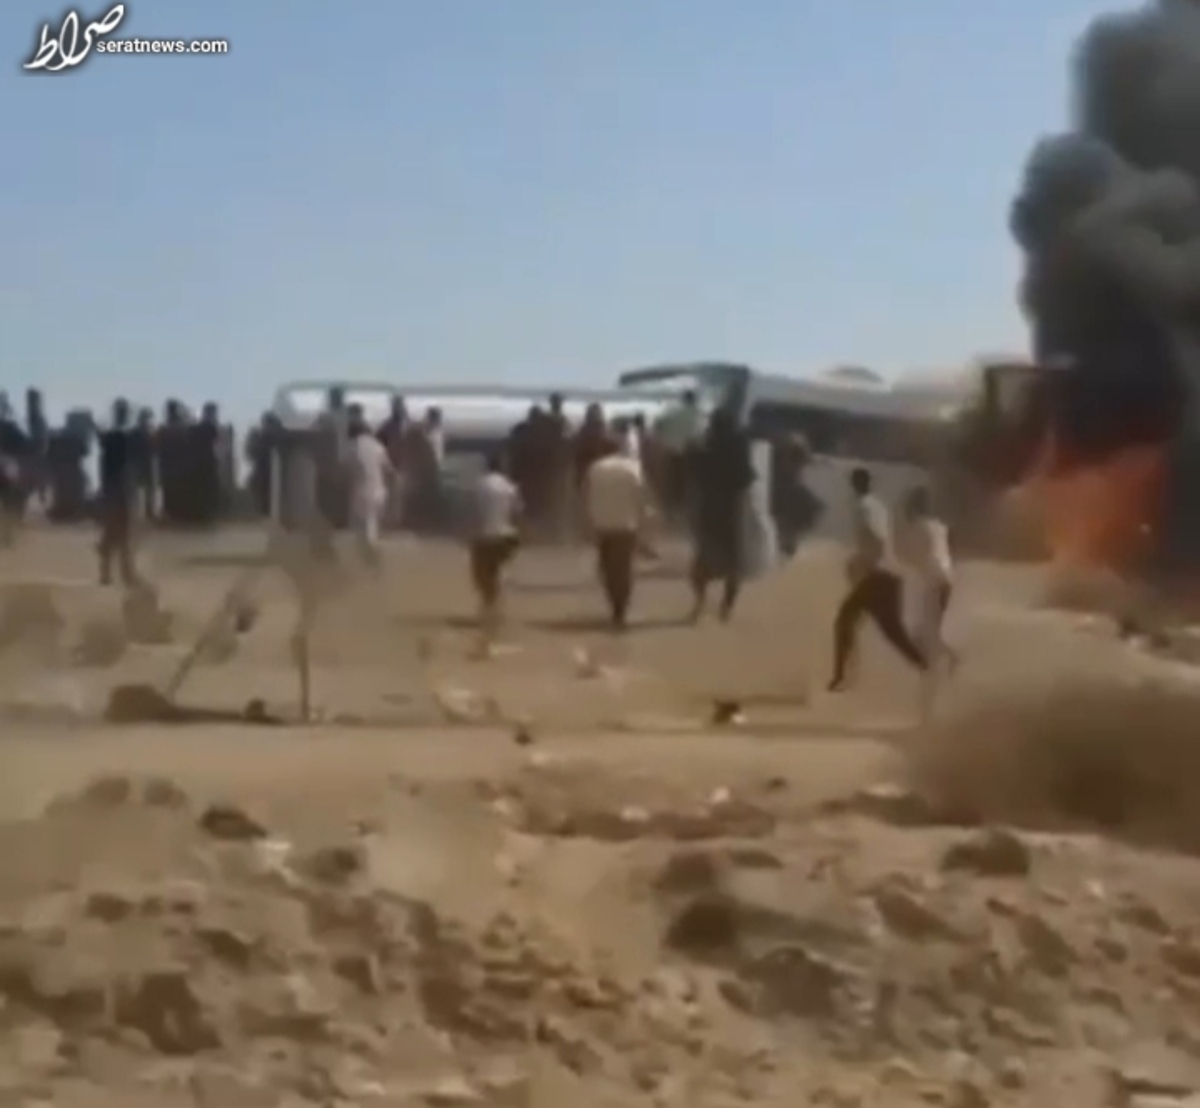 جزئیات انفجار در منطقه شوملی عراق/هویت افراد کشته شده مشخص نیست